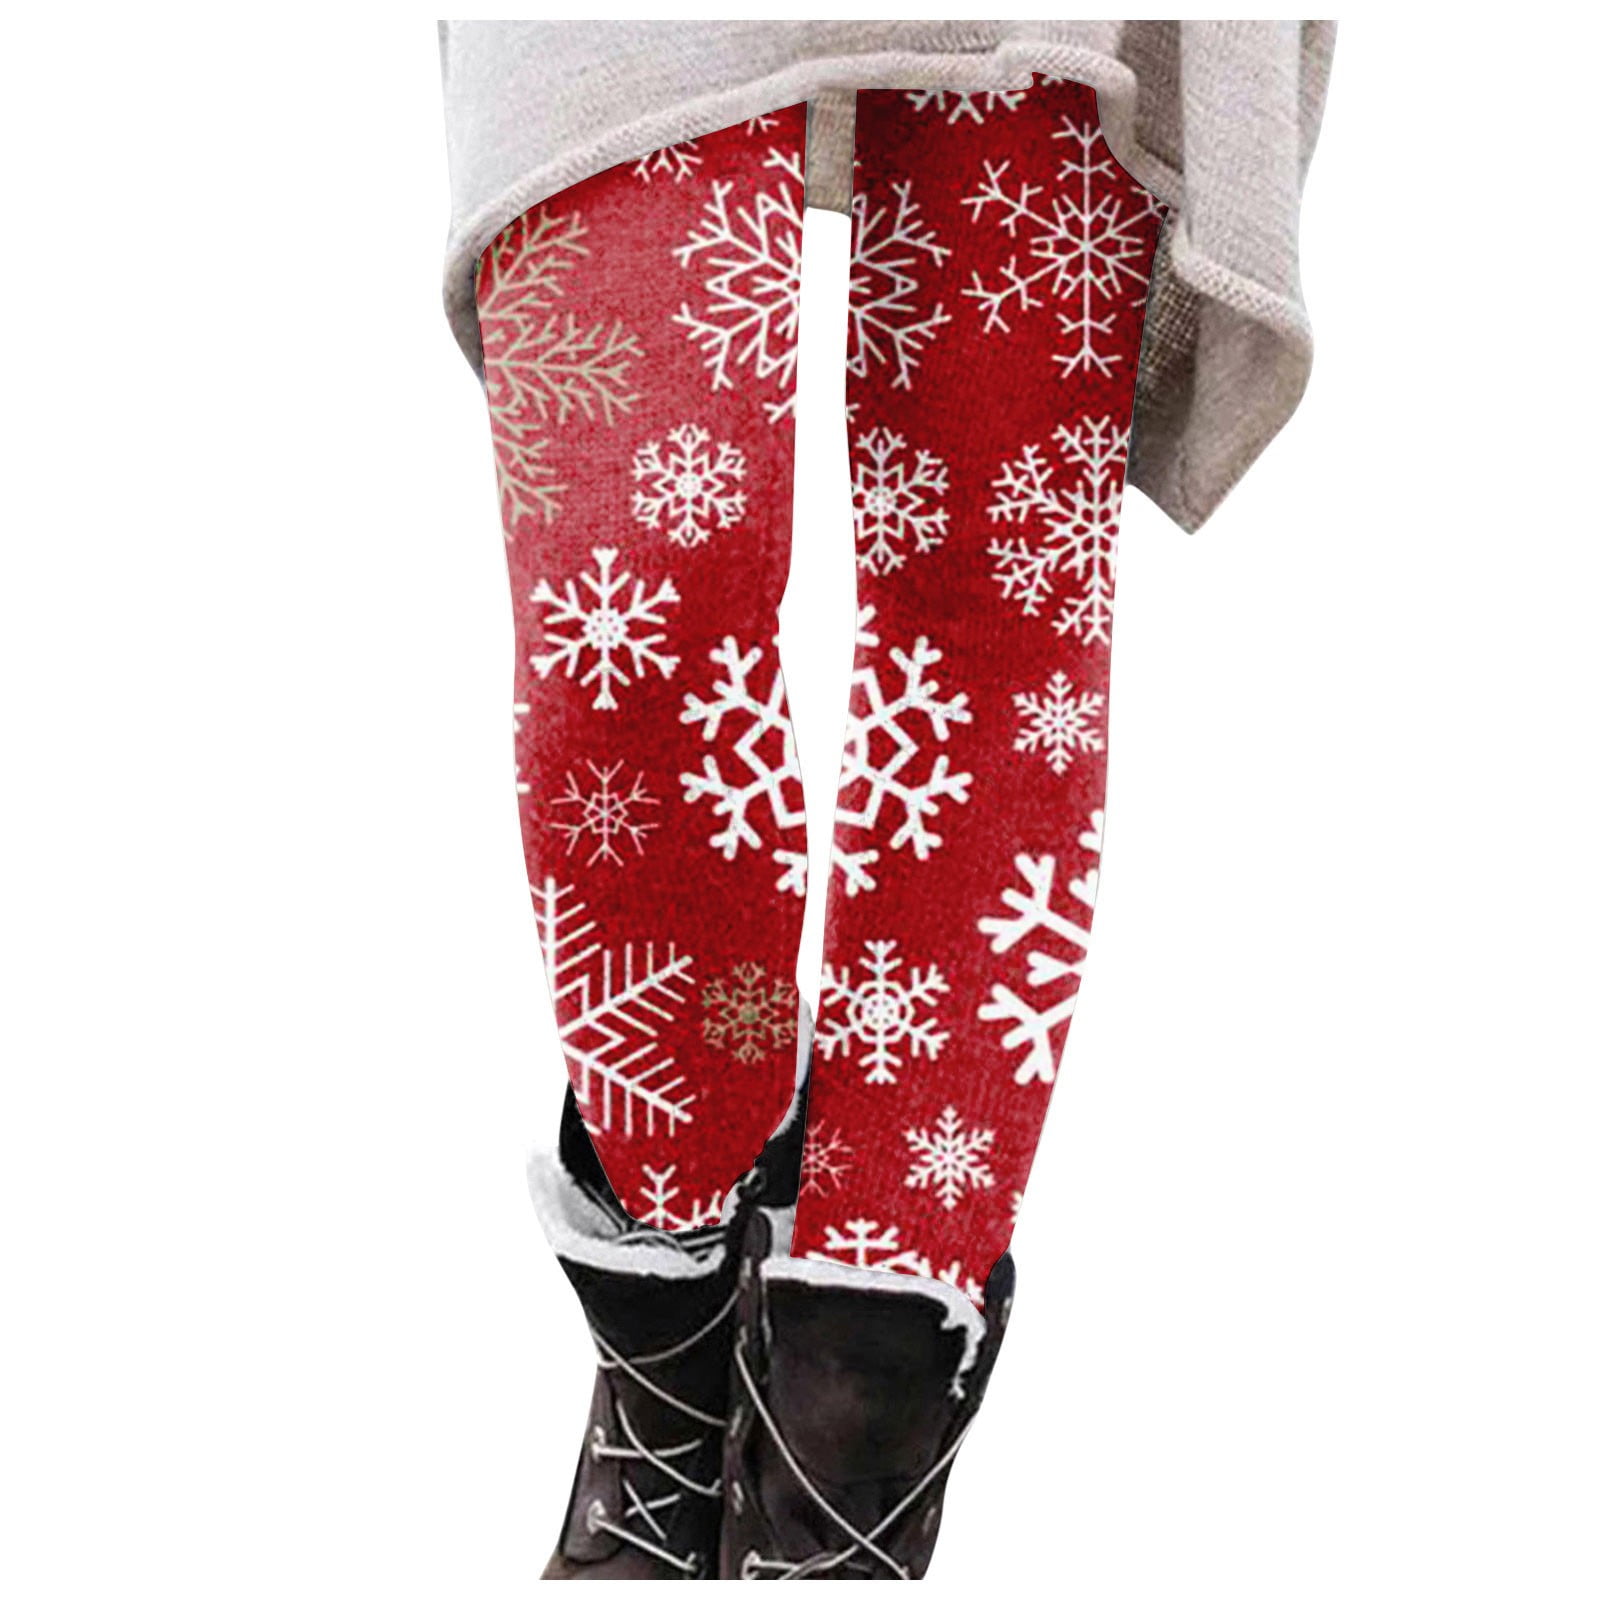 7/8-length thermal fleece leggings - light red